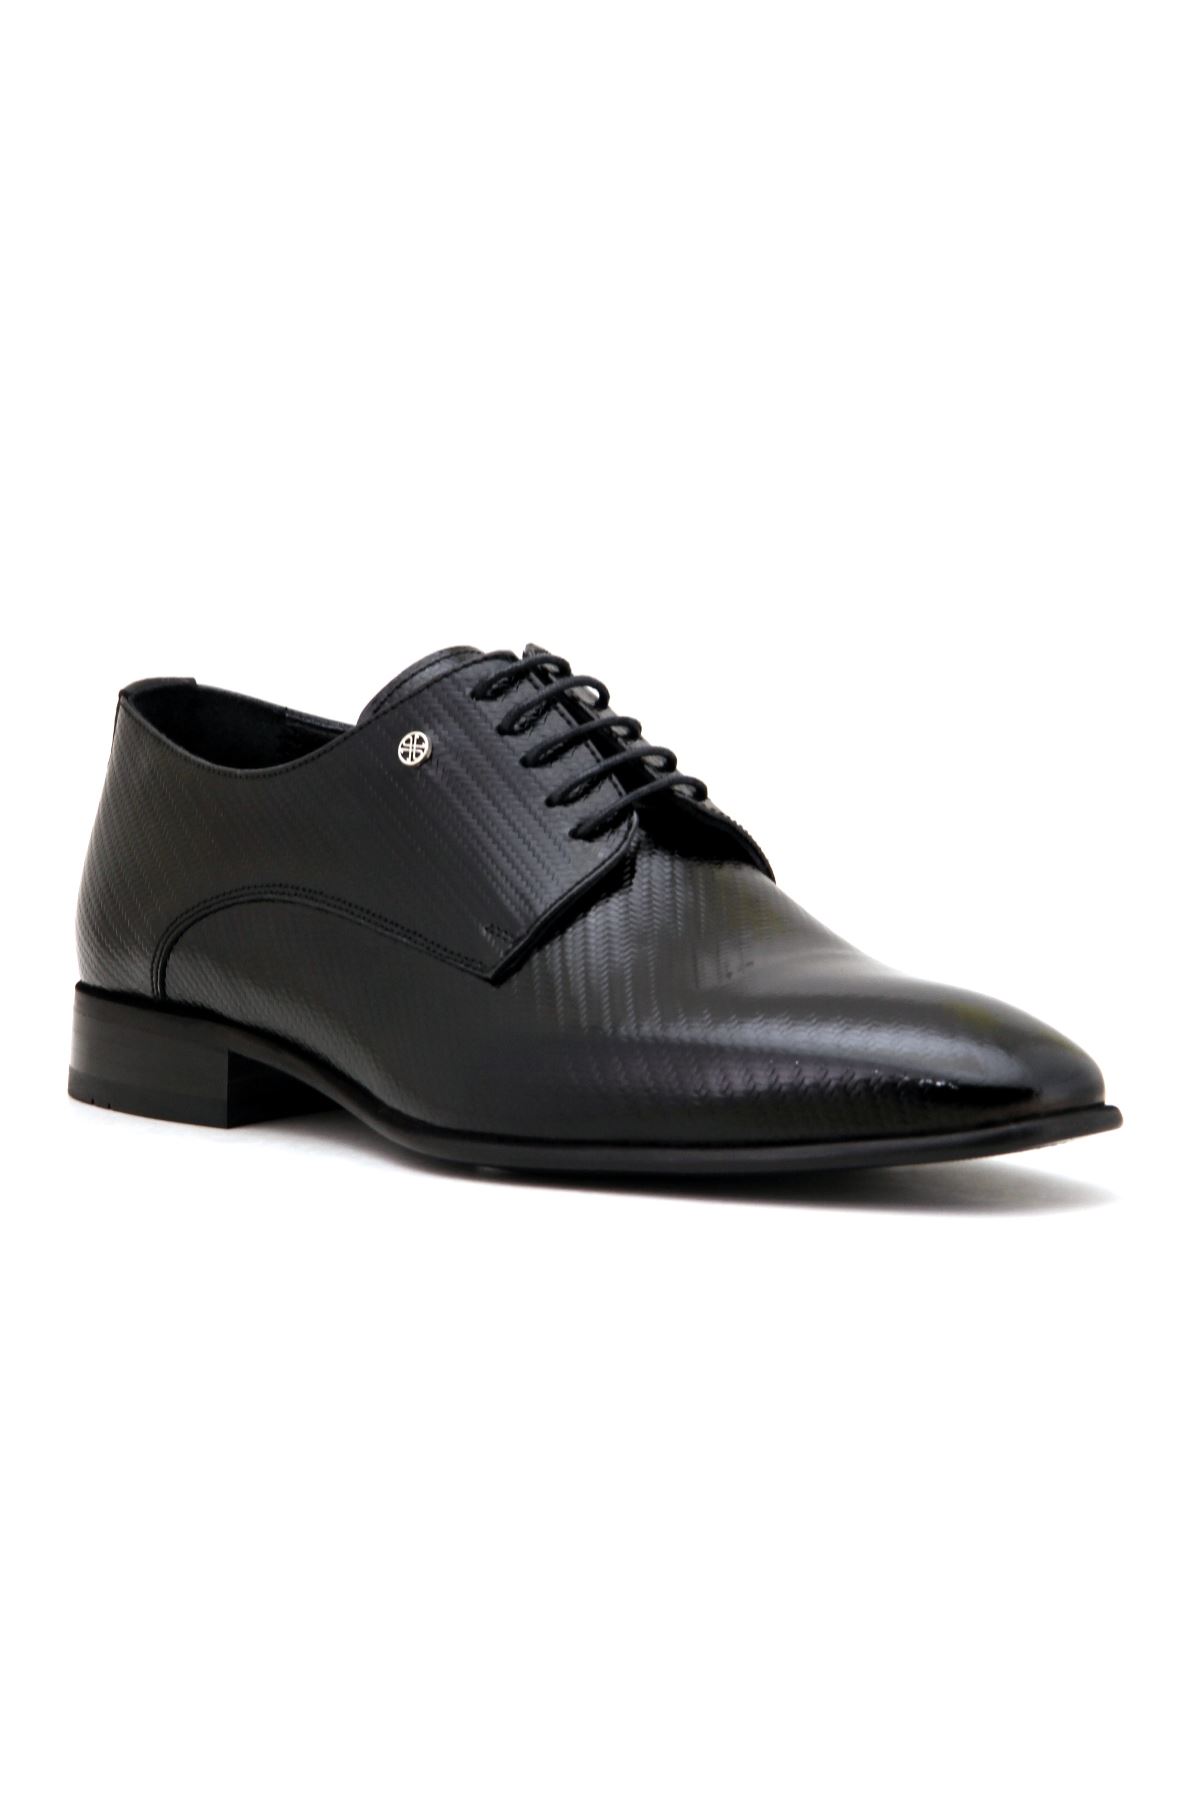 Marcomen 9550 Deri Klasik Erkek Ayakkabı - Siyah Rugan